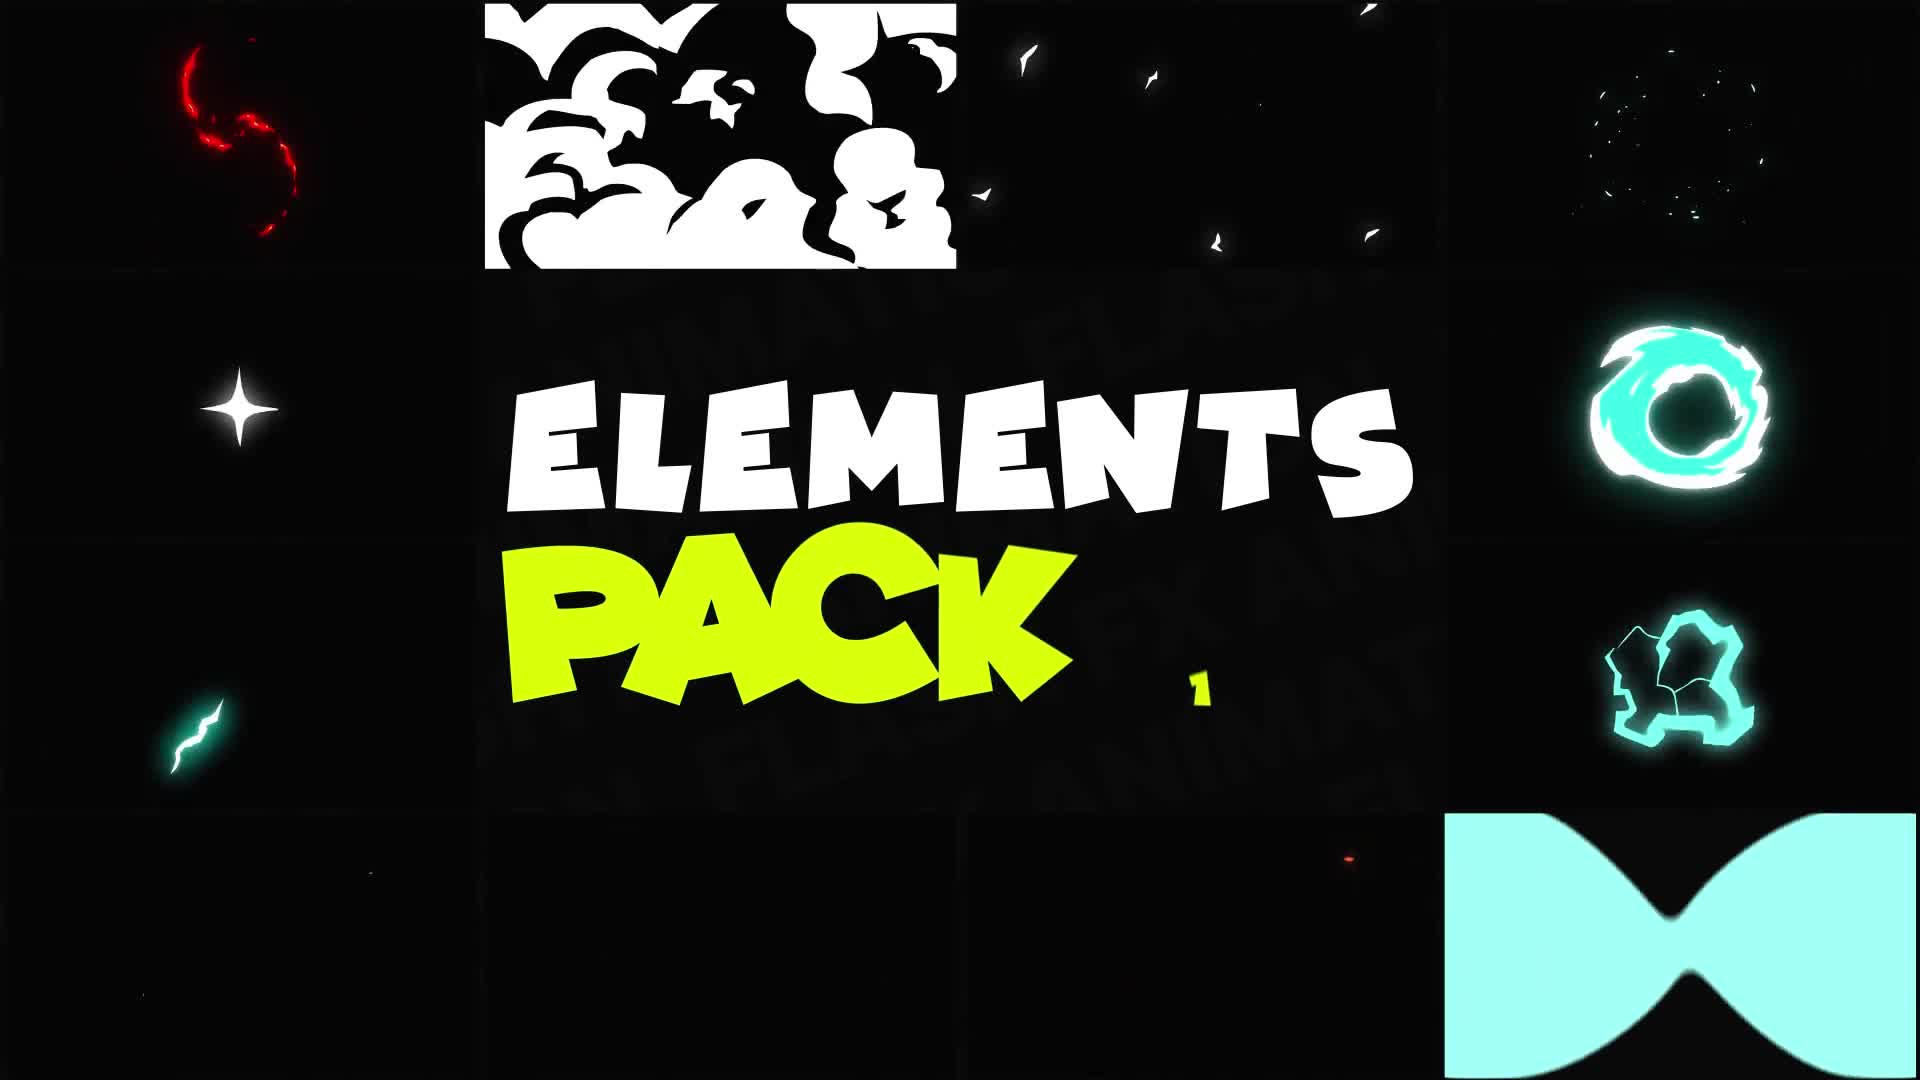 Flash FX Elements Pack 10 | Premiere Pro MOGRT Videohive 29239554 Premiere Pro Image 1